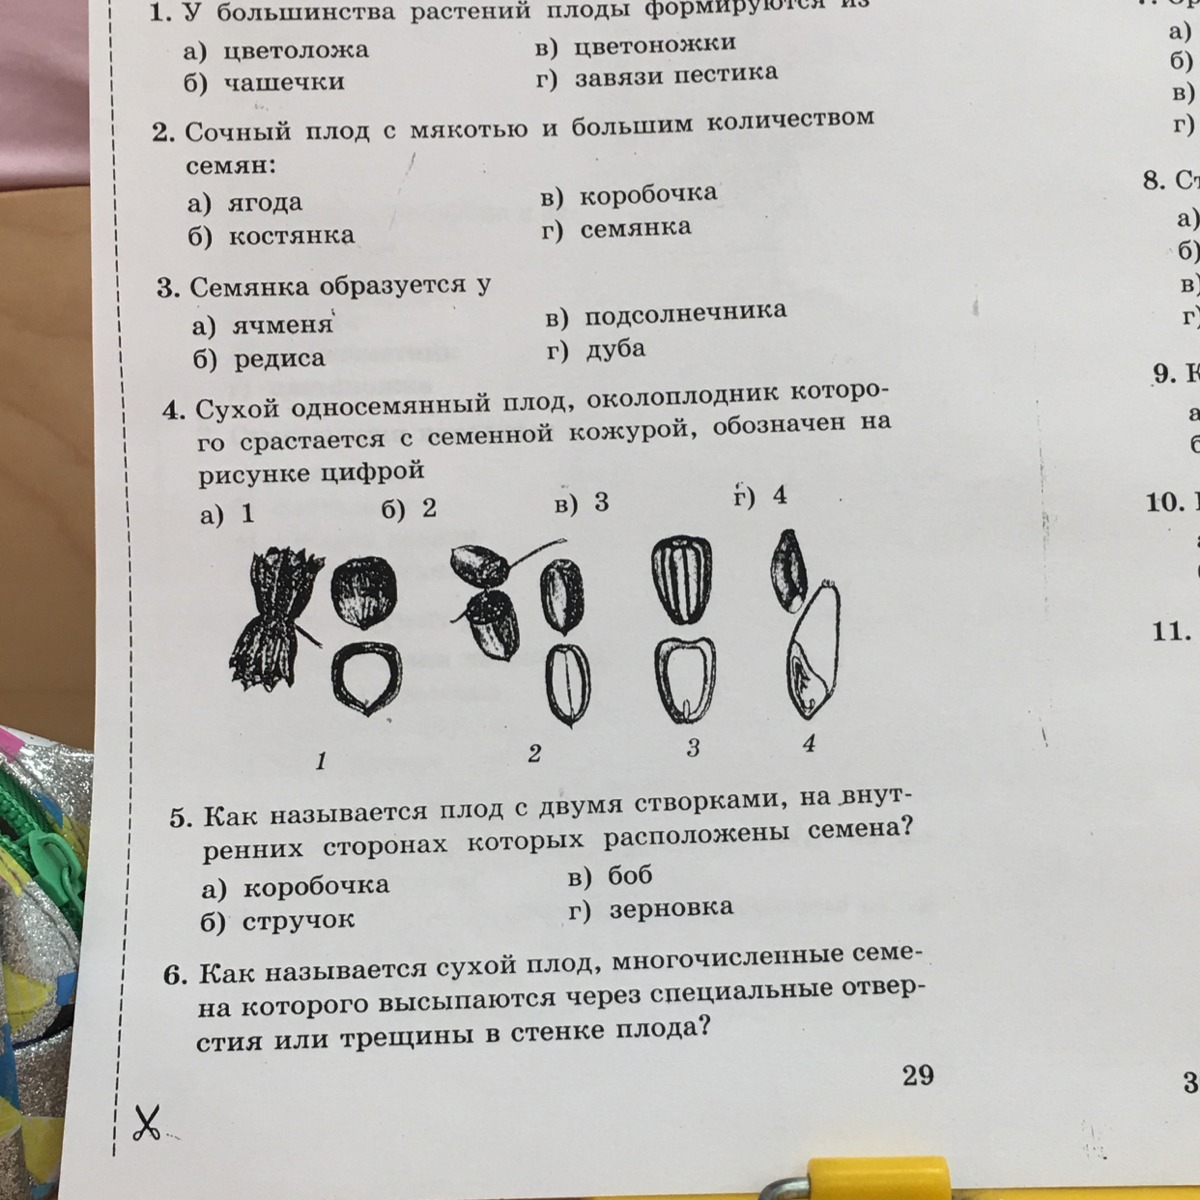 Тесты по биологии 6 класс к учебнику Пономаревой с ответами